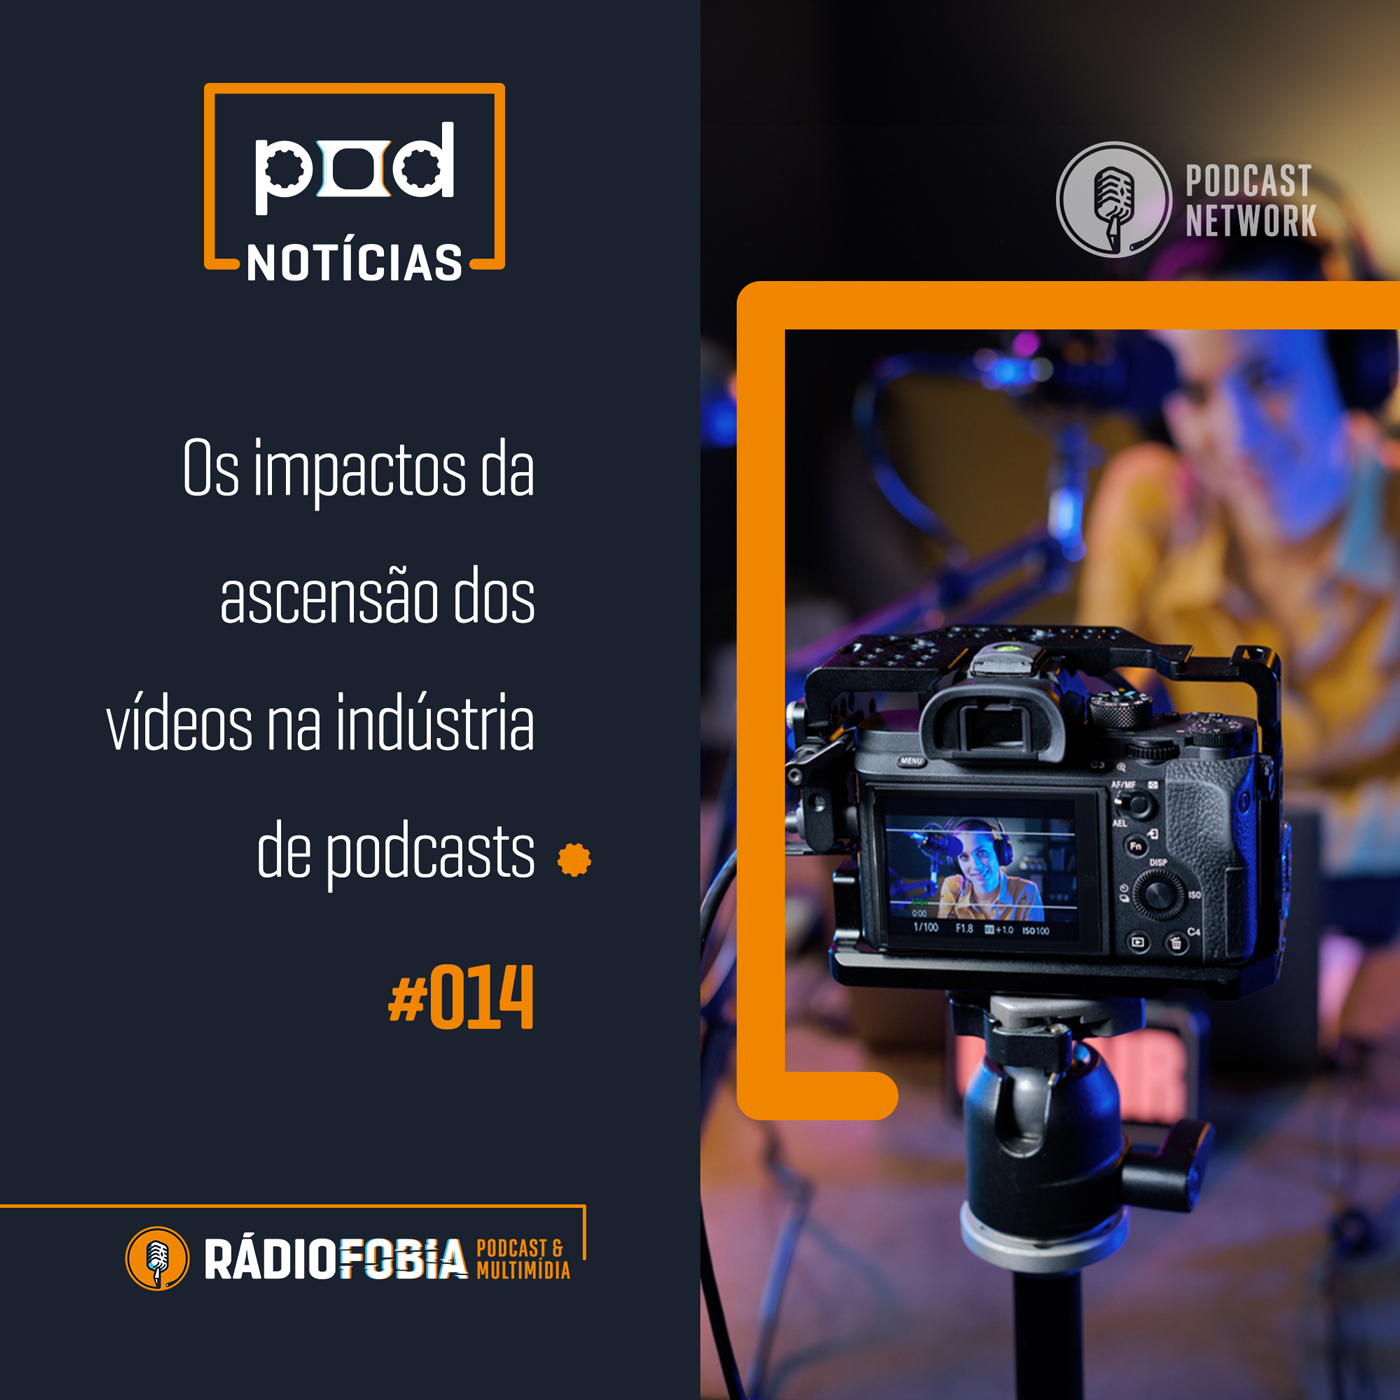 Pod Notícias 014 - Os impactos da ascensão dos vídeos na indústria de podcasts